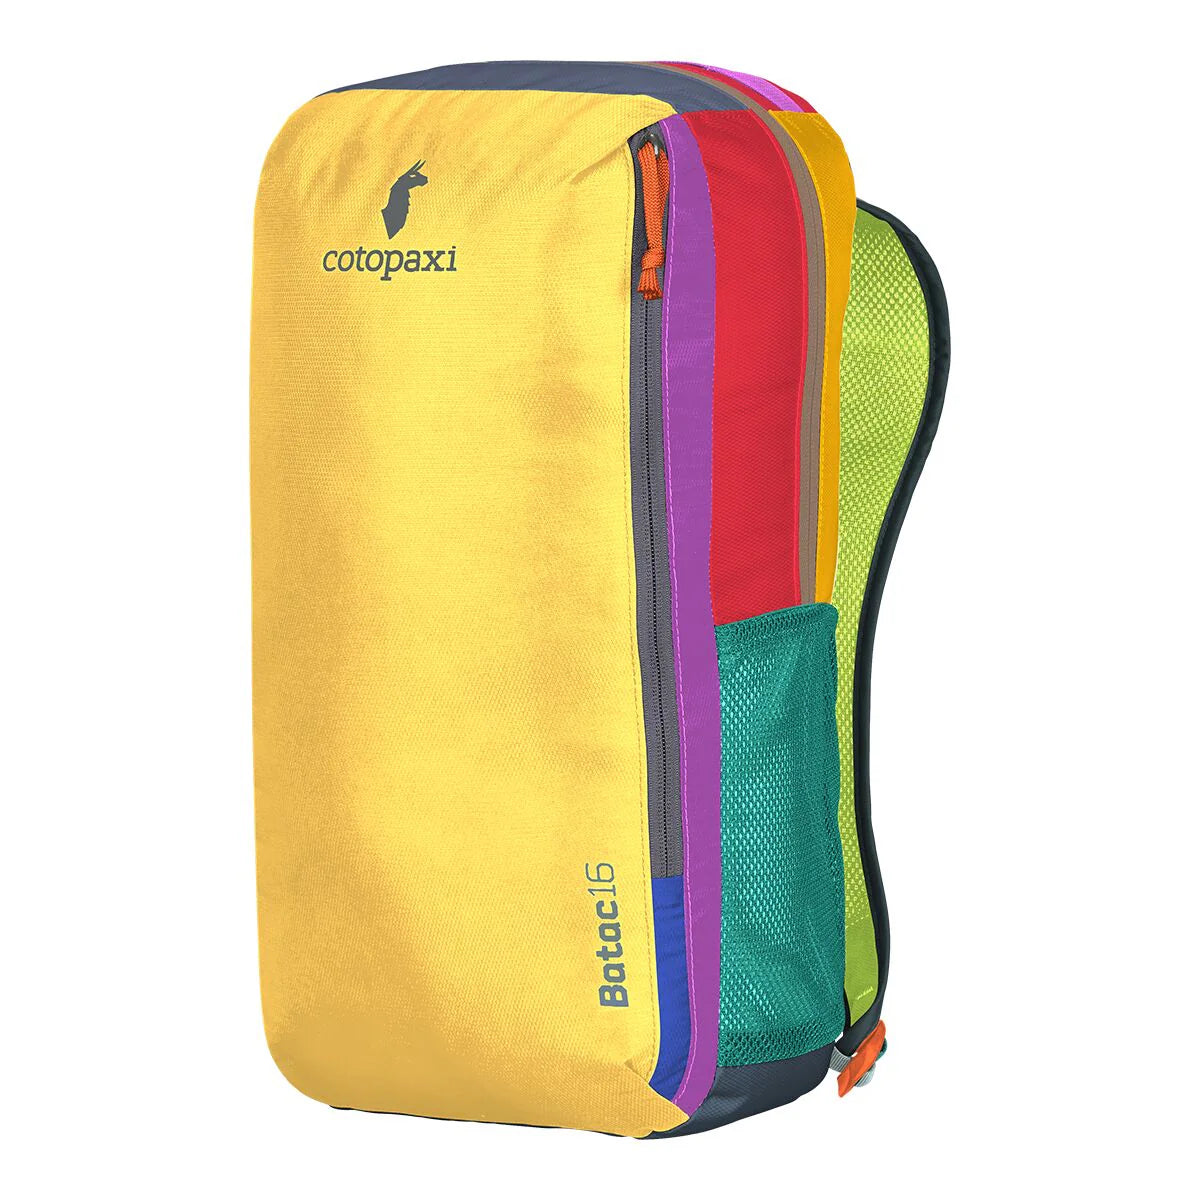 Batac 16L Backpack Del Dia Assorted Colours